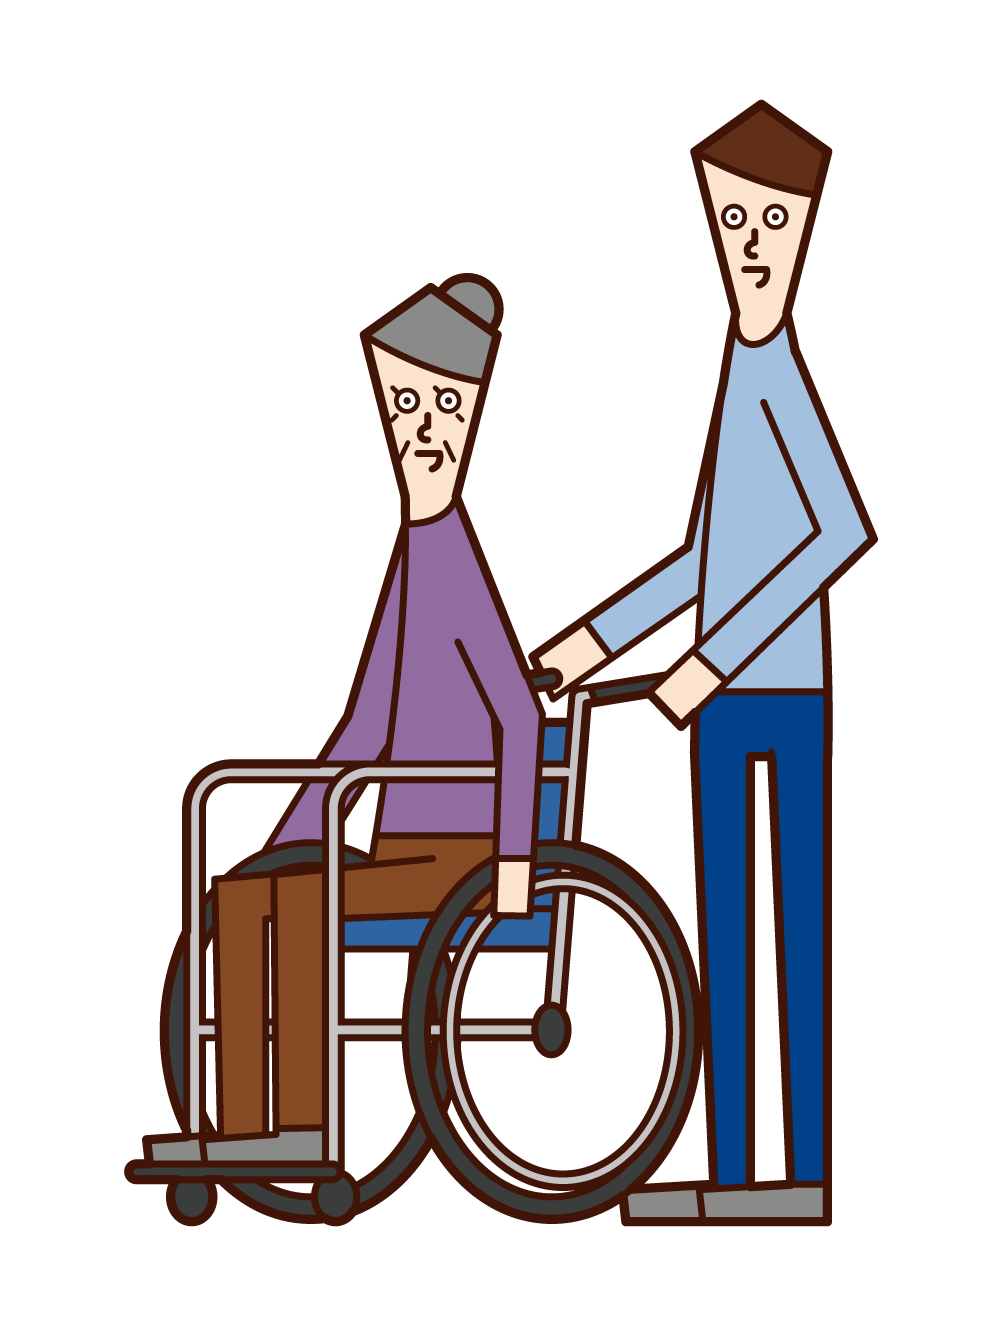 車椅子に乗る老人 女性 と押す人 男性 のイラスト フリーイラスト素材 Kukukeke ククケケ